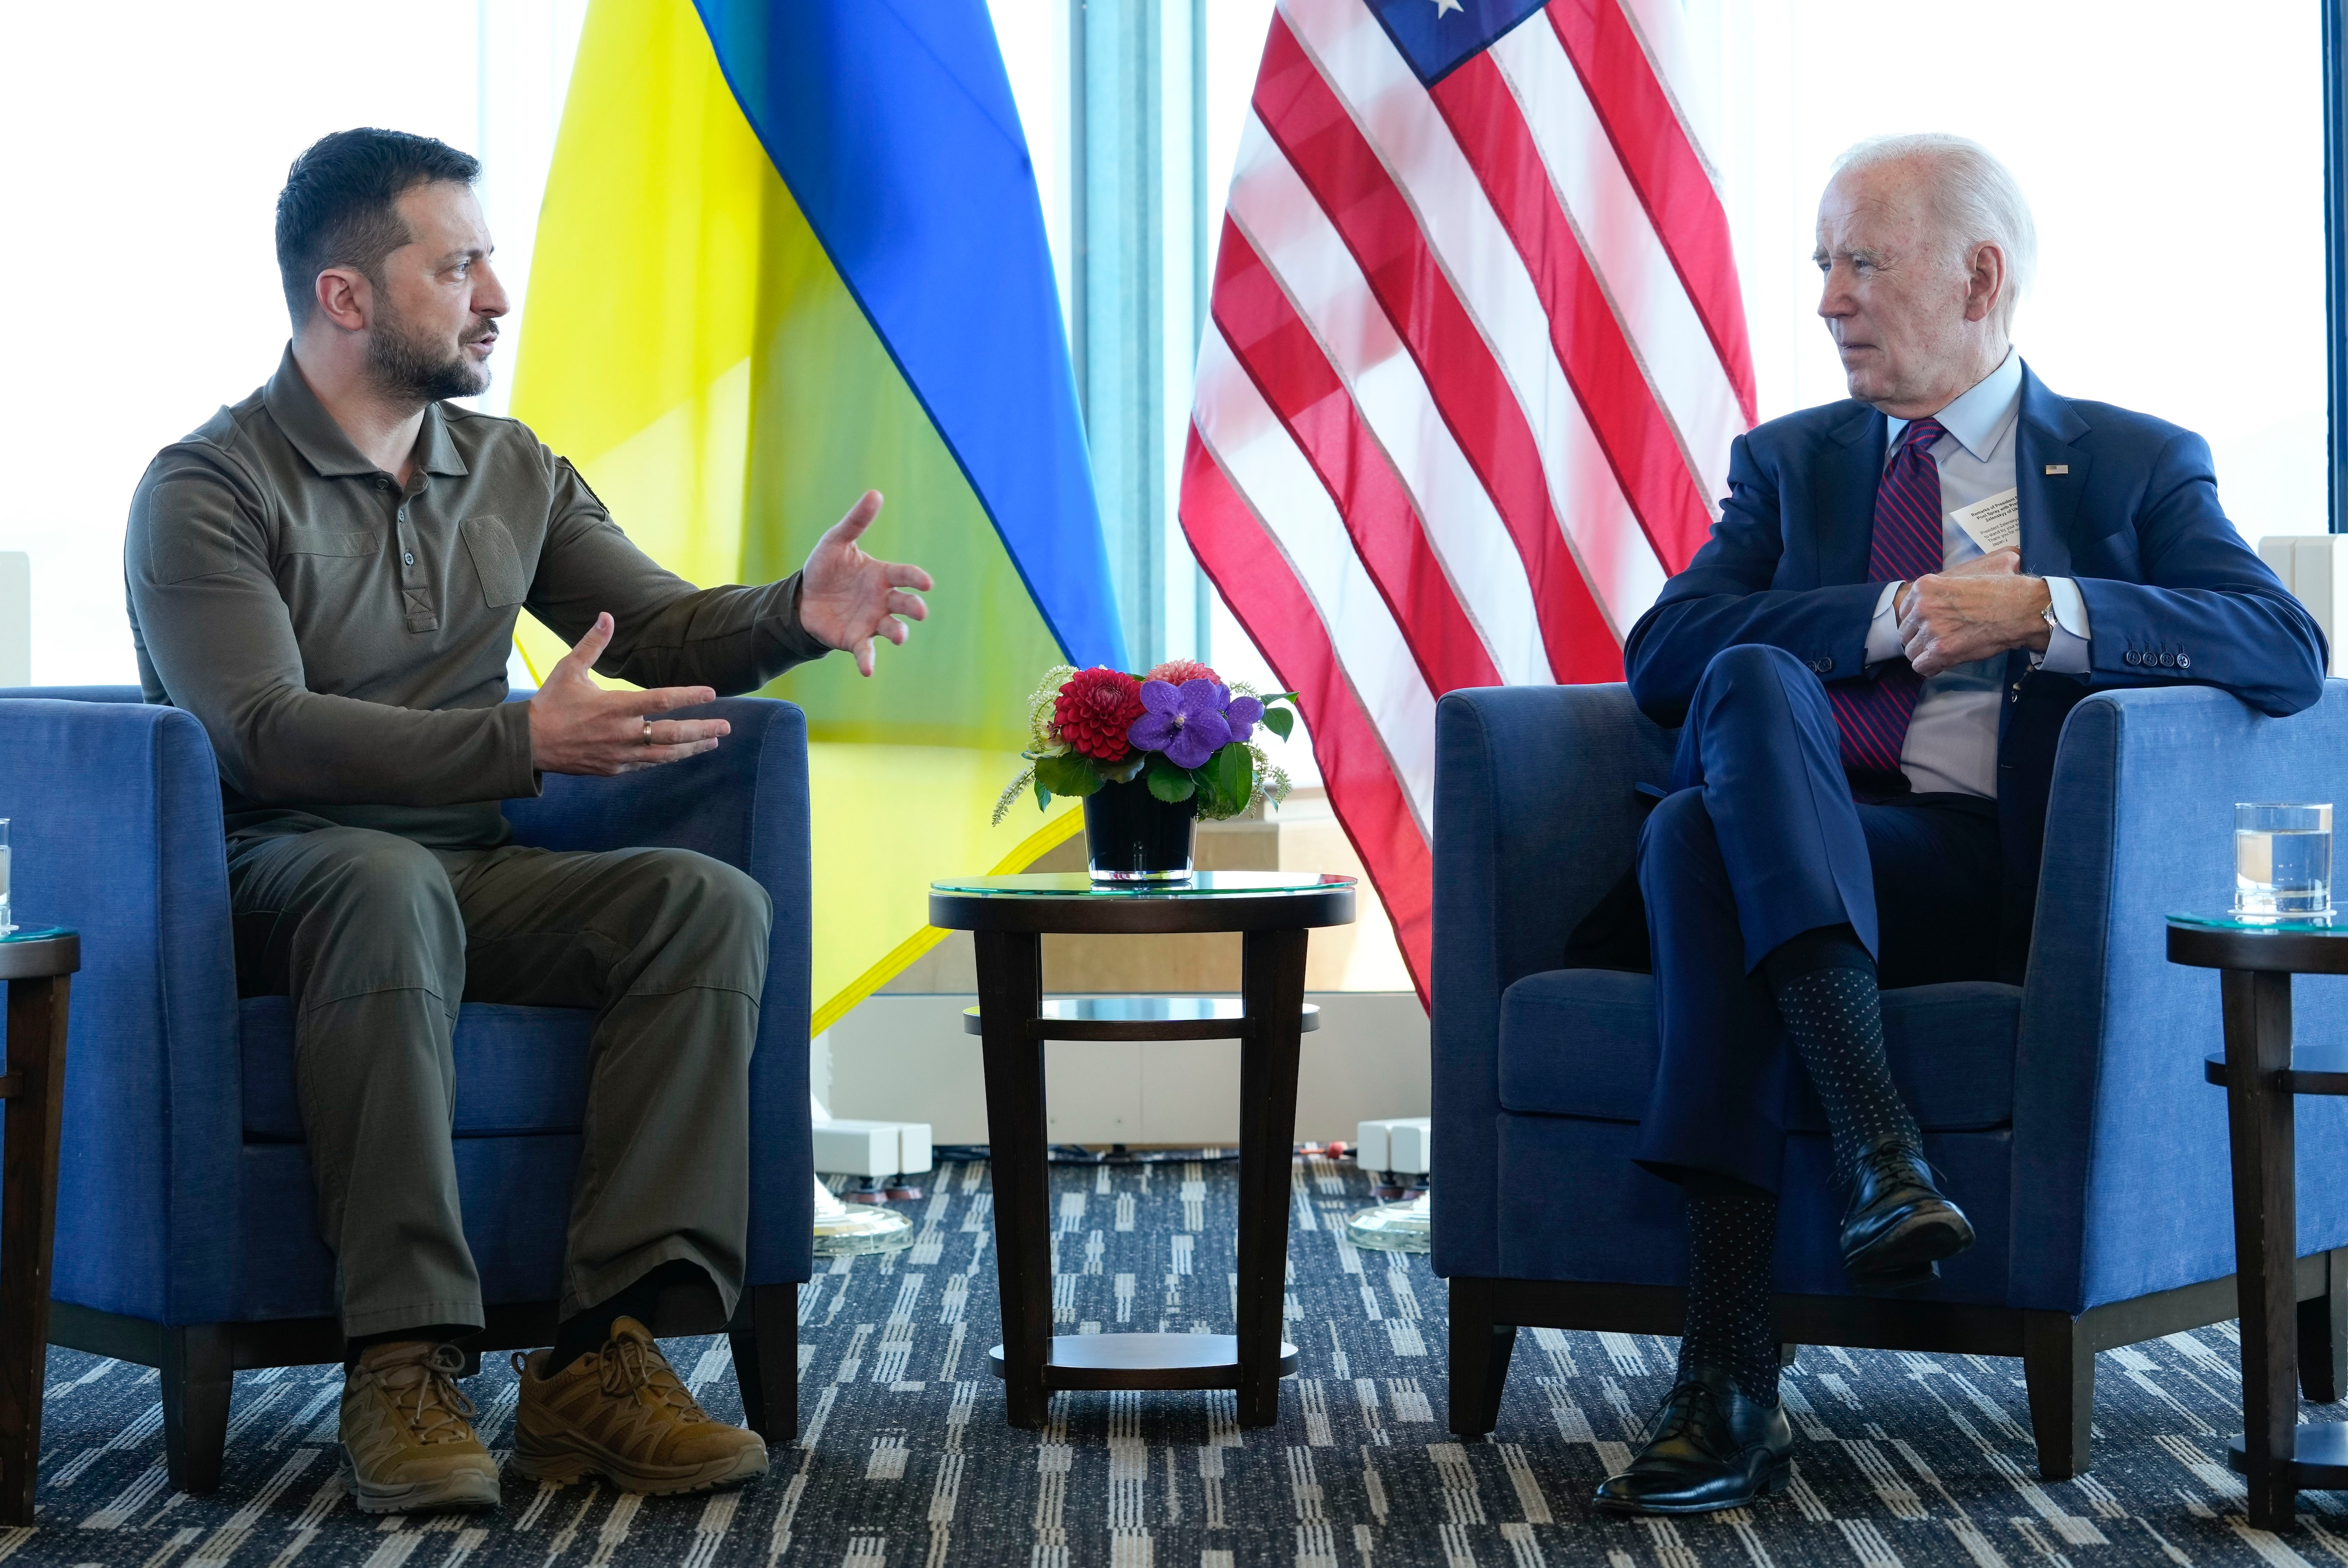 El presidente de EEUU Joe Biden anunció la entrega de un nuevo paquete de armamento para Ucrania, que se espera lance próximamente una gran contraofensiva para intentar recuperar los territorios ocupados por Rusia en el sur y el este del país. (AP)